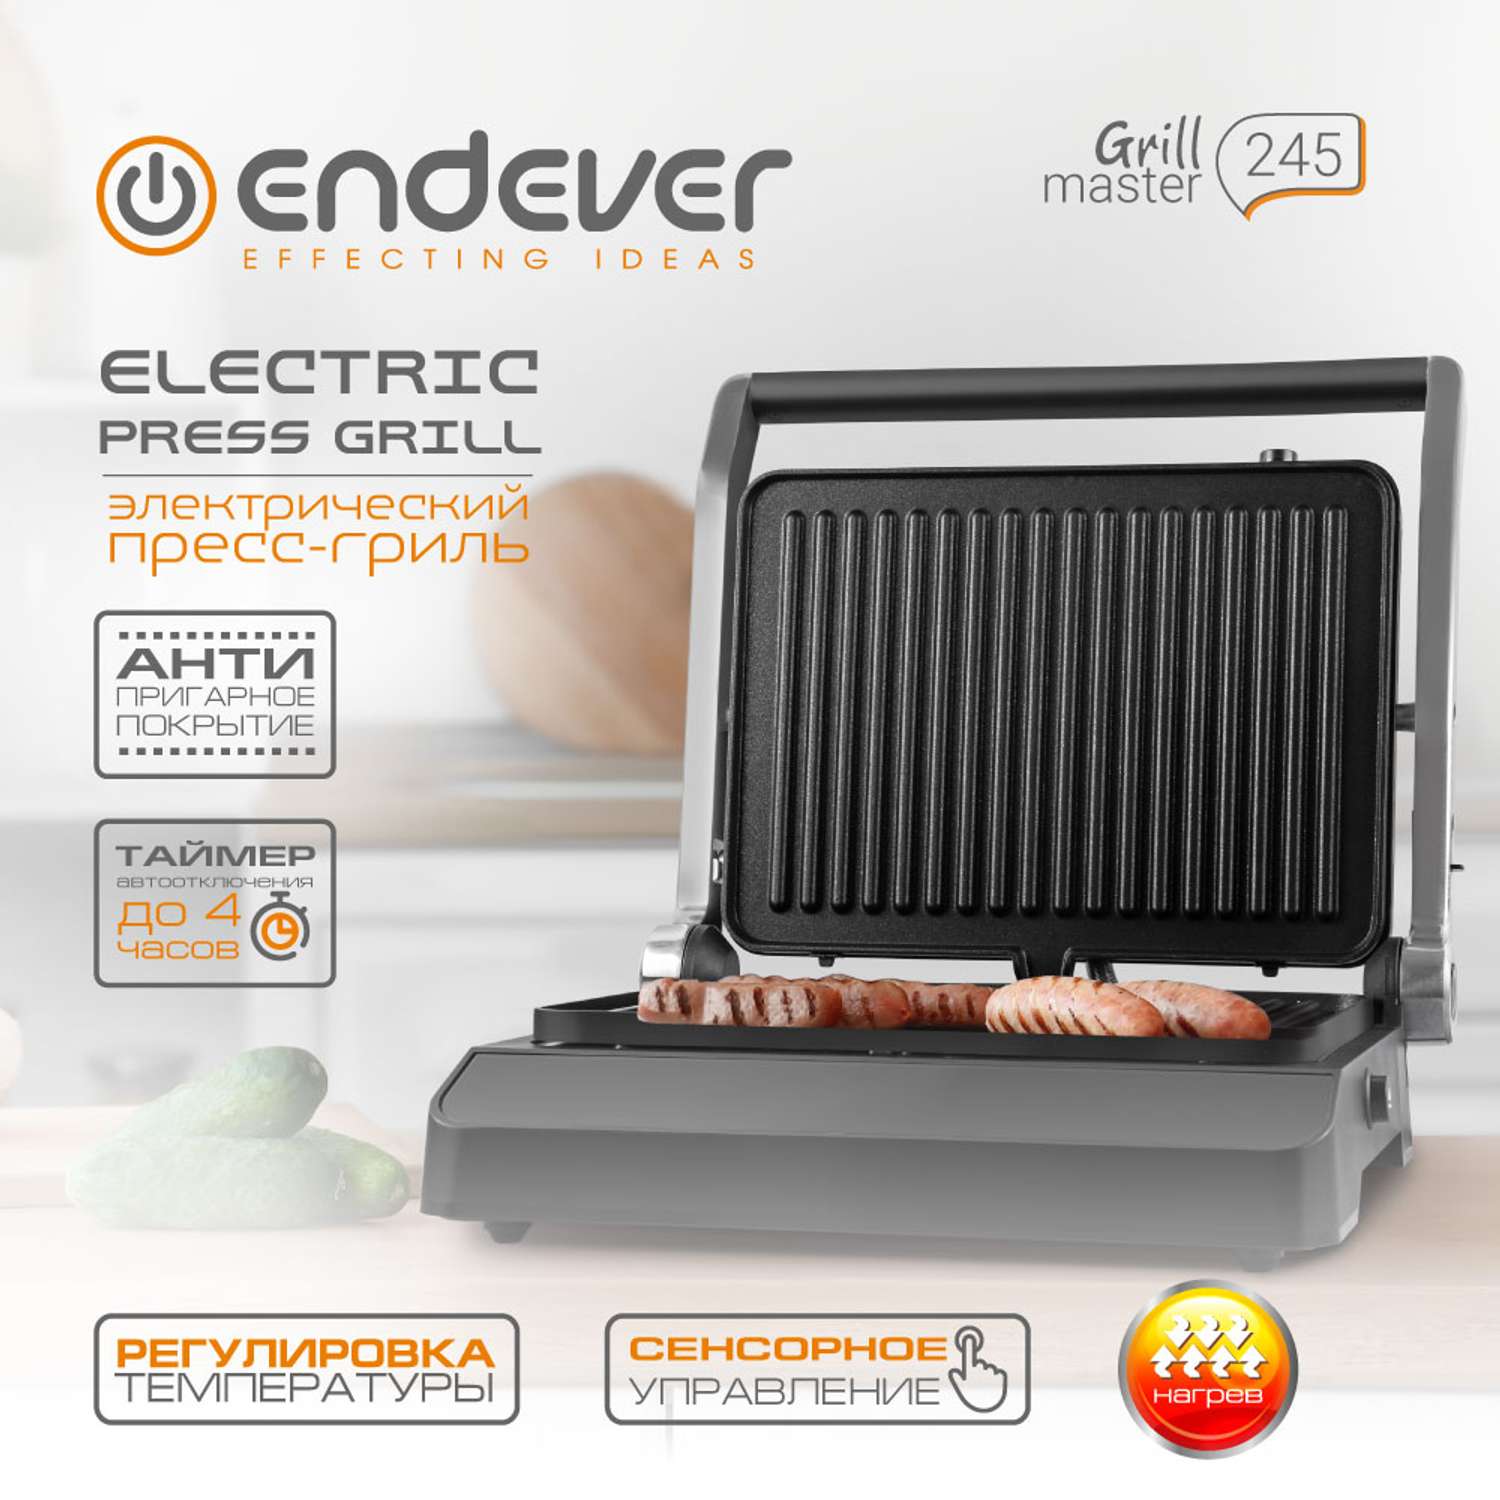 Электрический пресс-гриль ENDEVER grillmaster 245 - фото 2